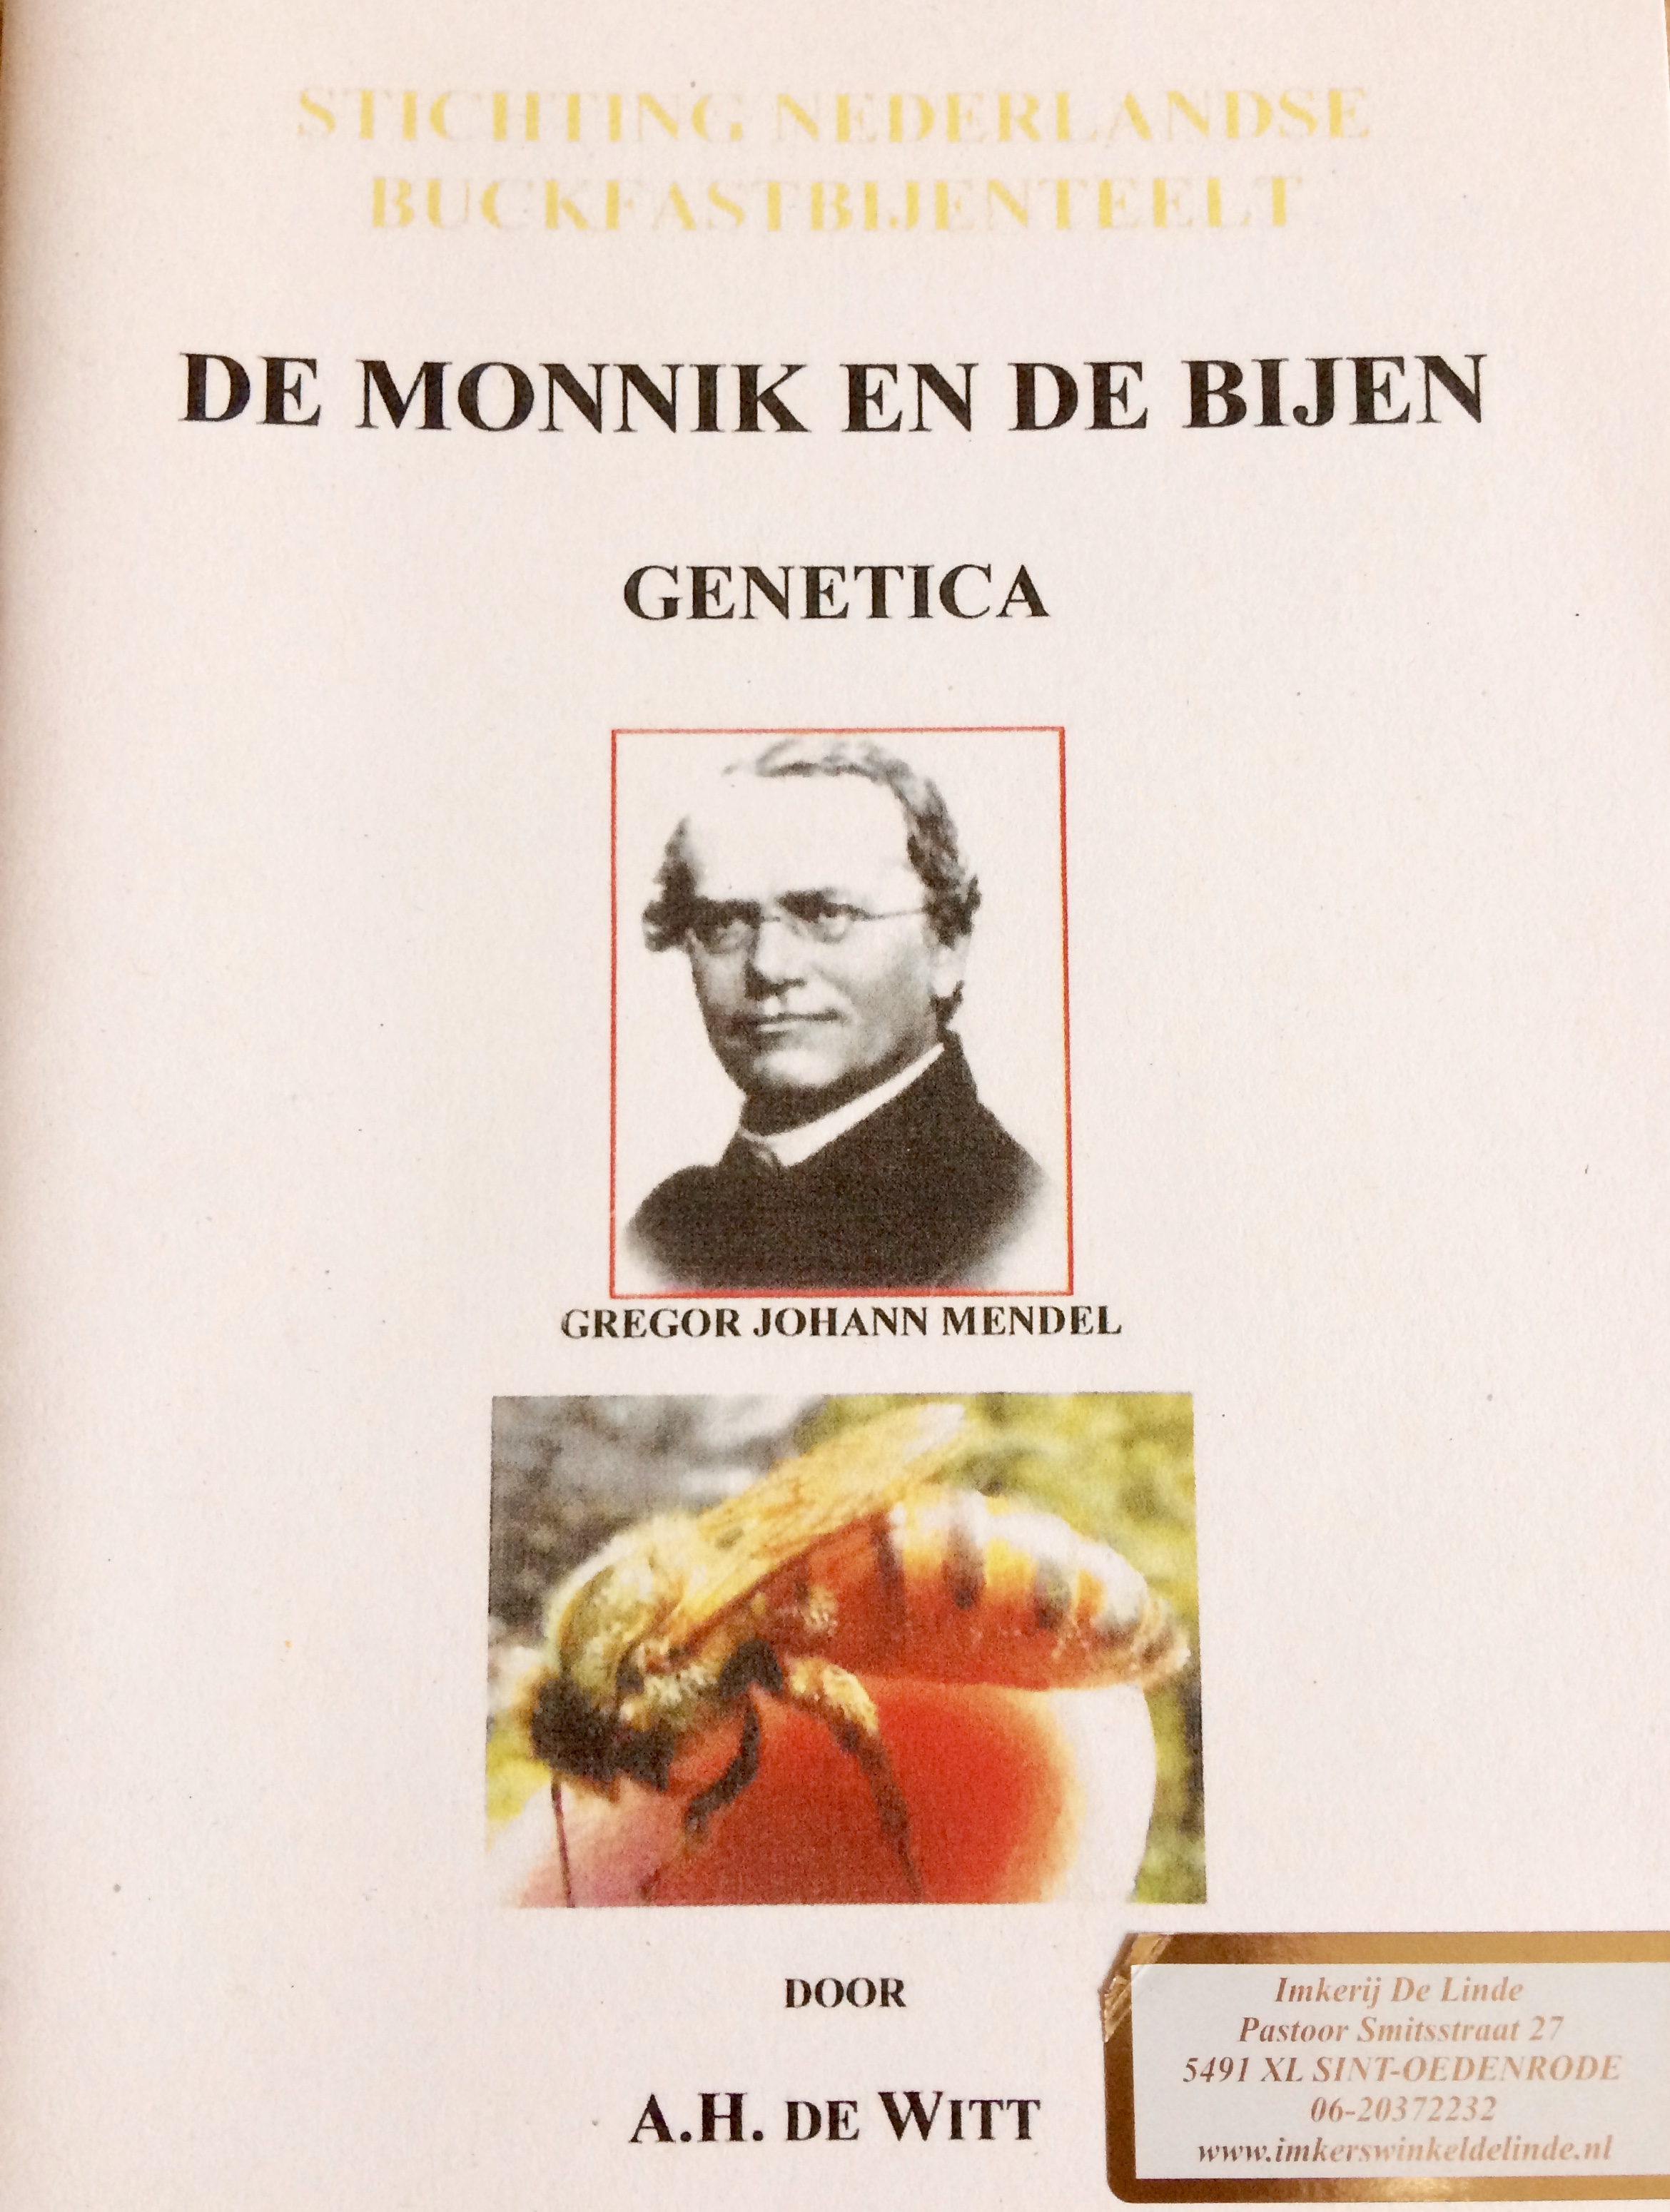 De monnik en de bijen door A.H. de Witt kopen bij Imkerij De Linde